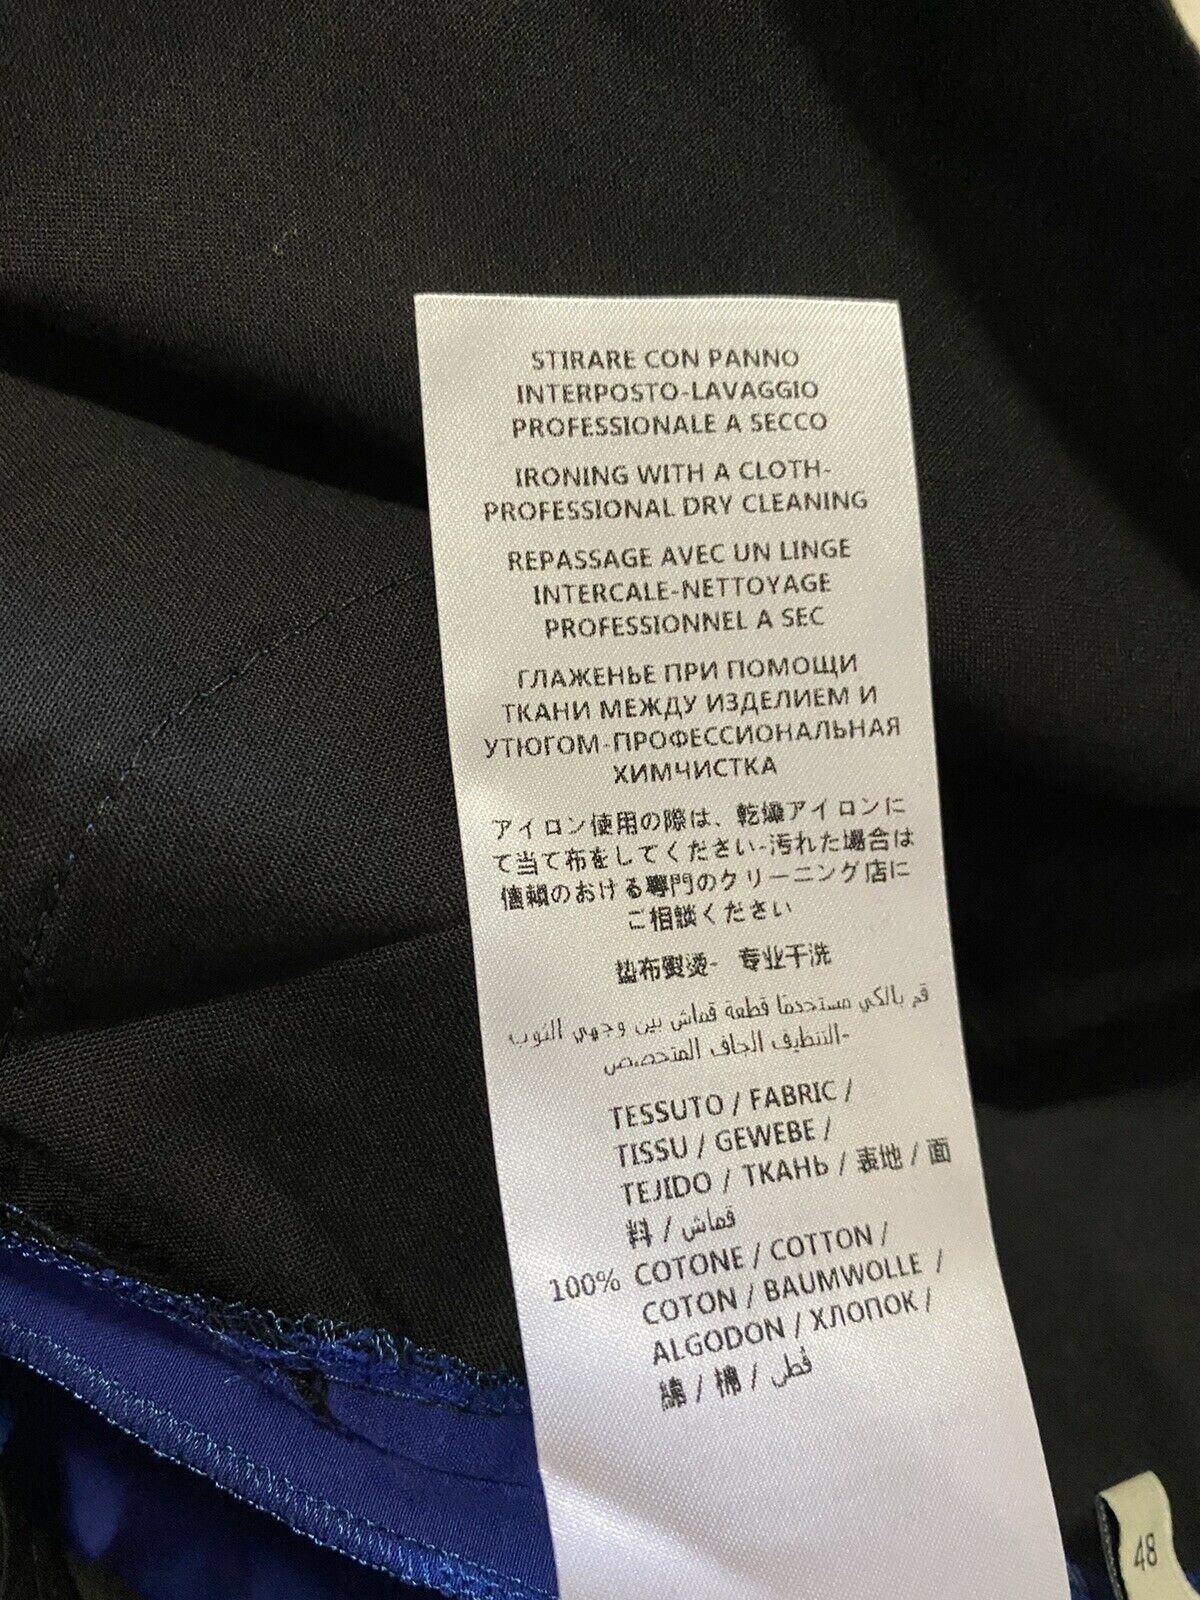 СЗТ $880 Мужские короткие брюки Gucci синие, размер 32 США (48 ЕС) Италия